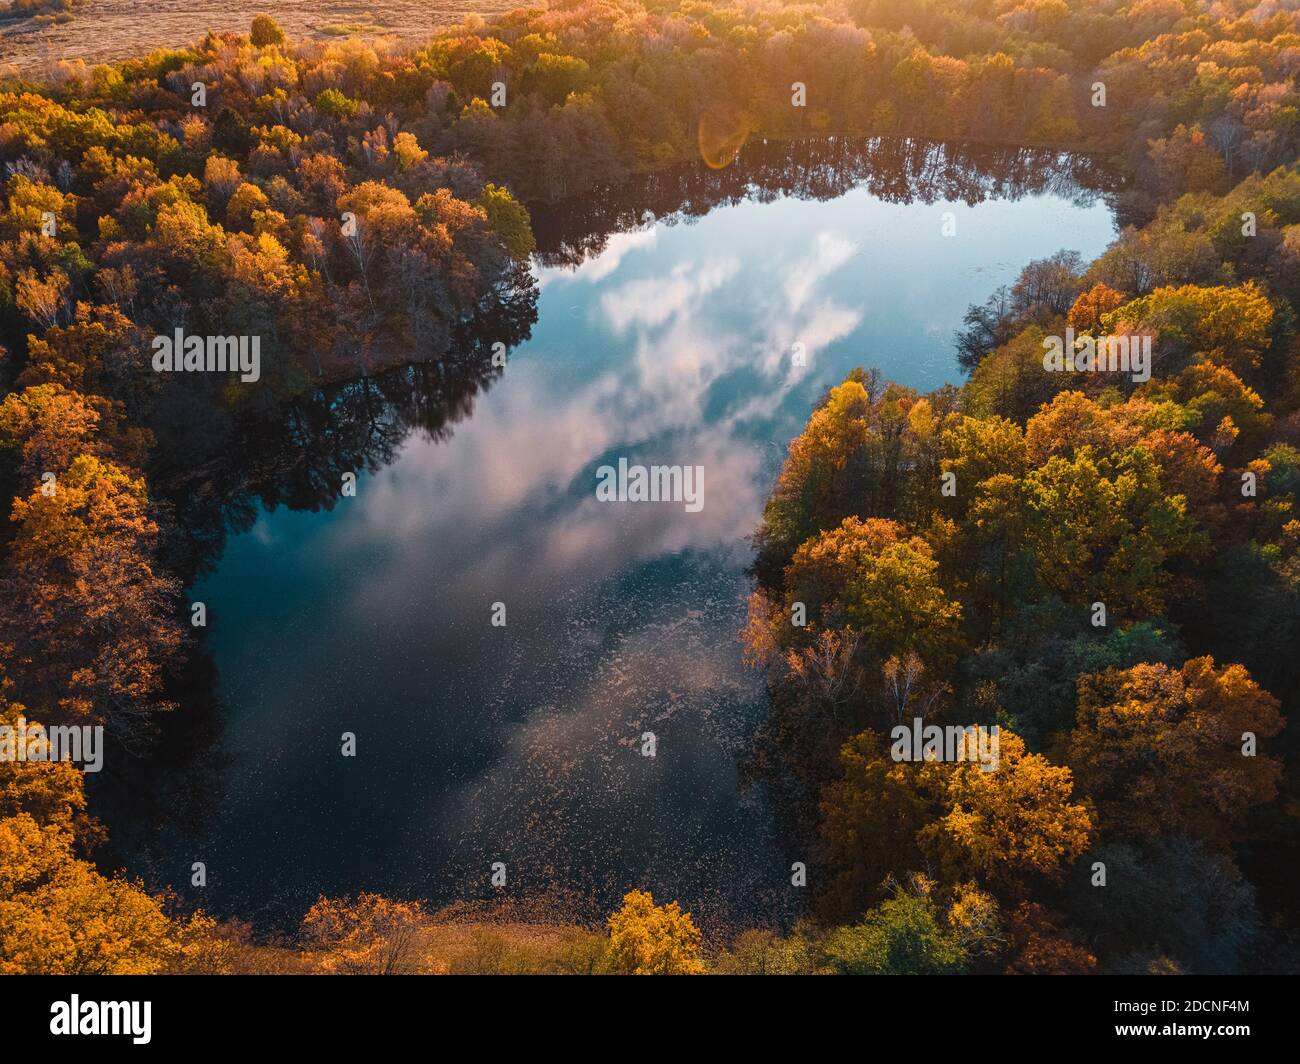 Luftaufnahme des Sees im schönen Herbstwald. Schöne Landschaft mit Bäumen mit grünen, roten und orangefarbenen Blättern. Draufsicht von fliegender Drohne Stockfoto